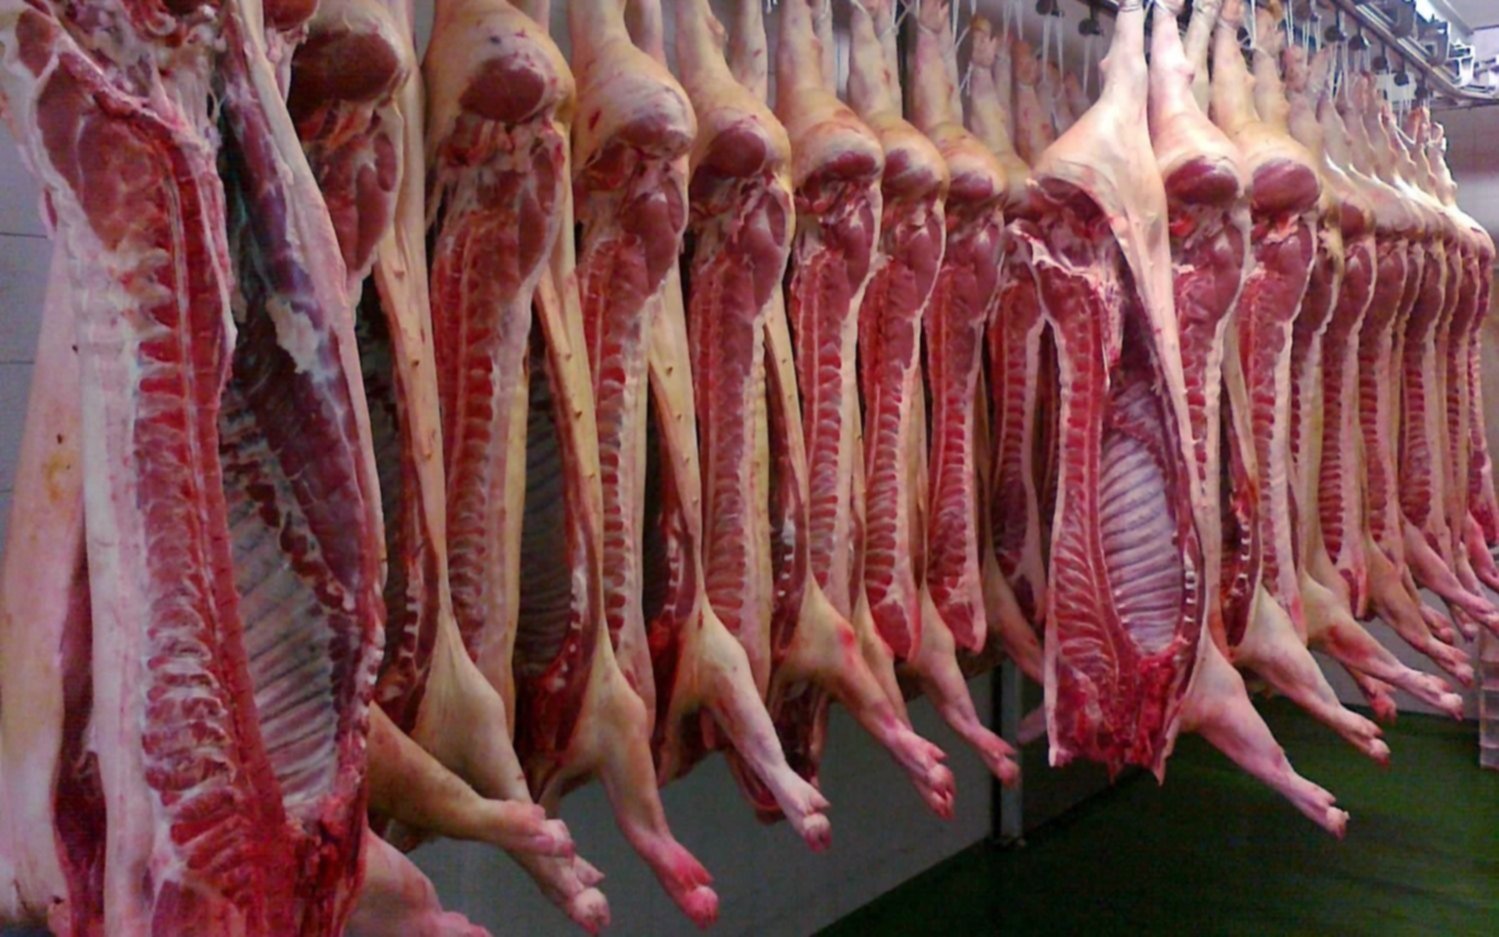 фото мяса свинины